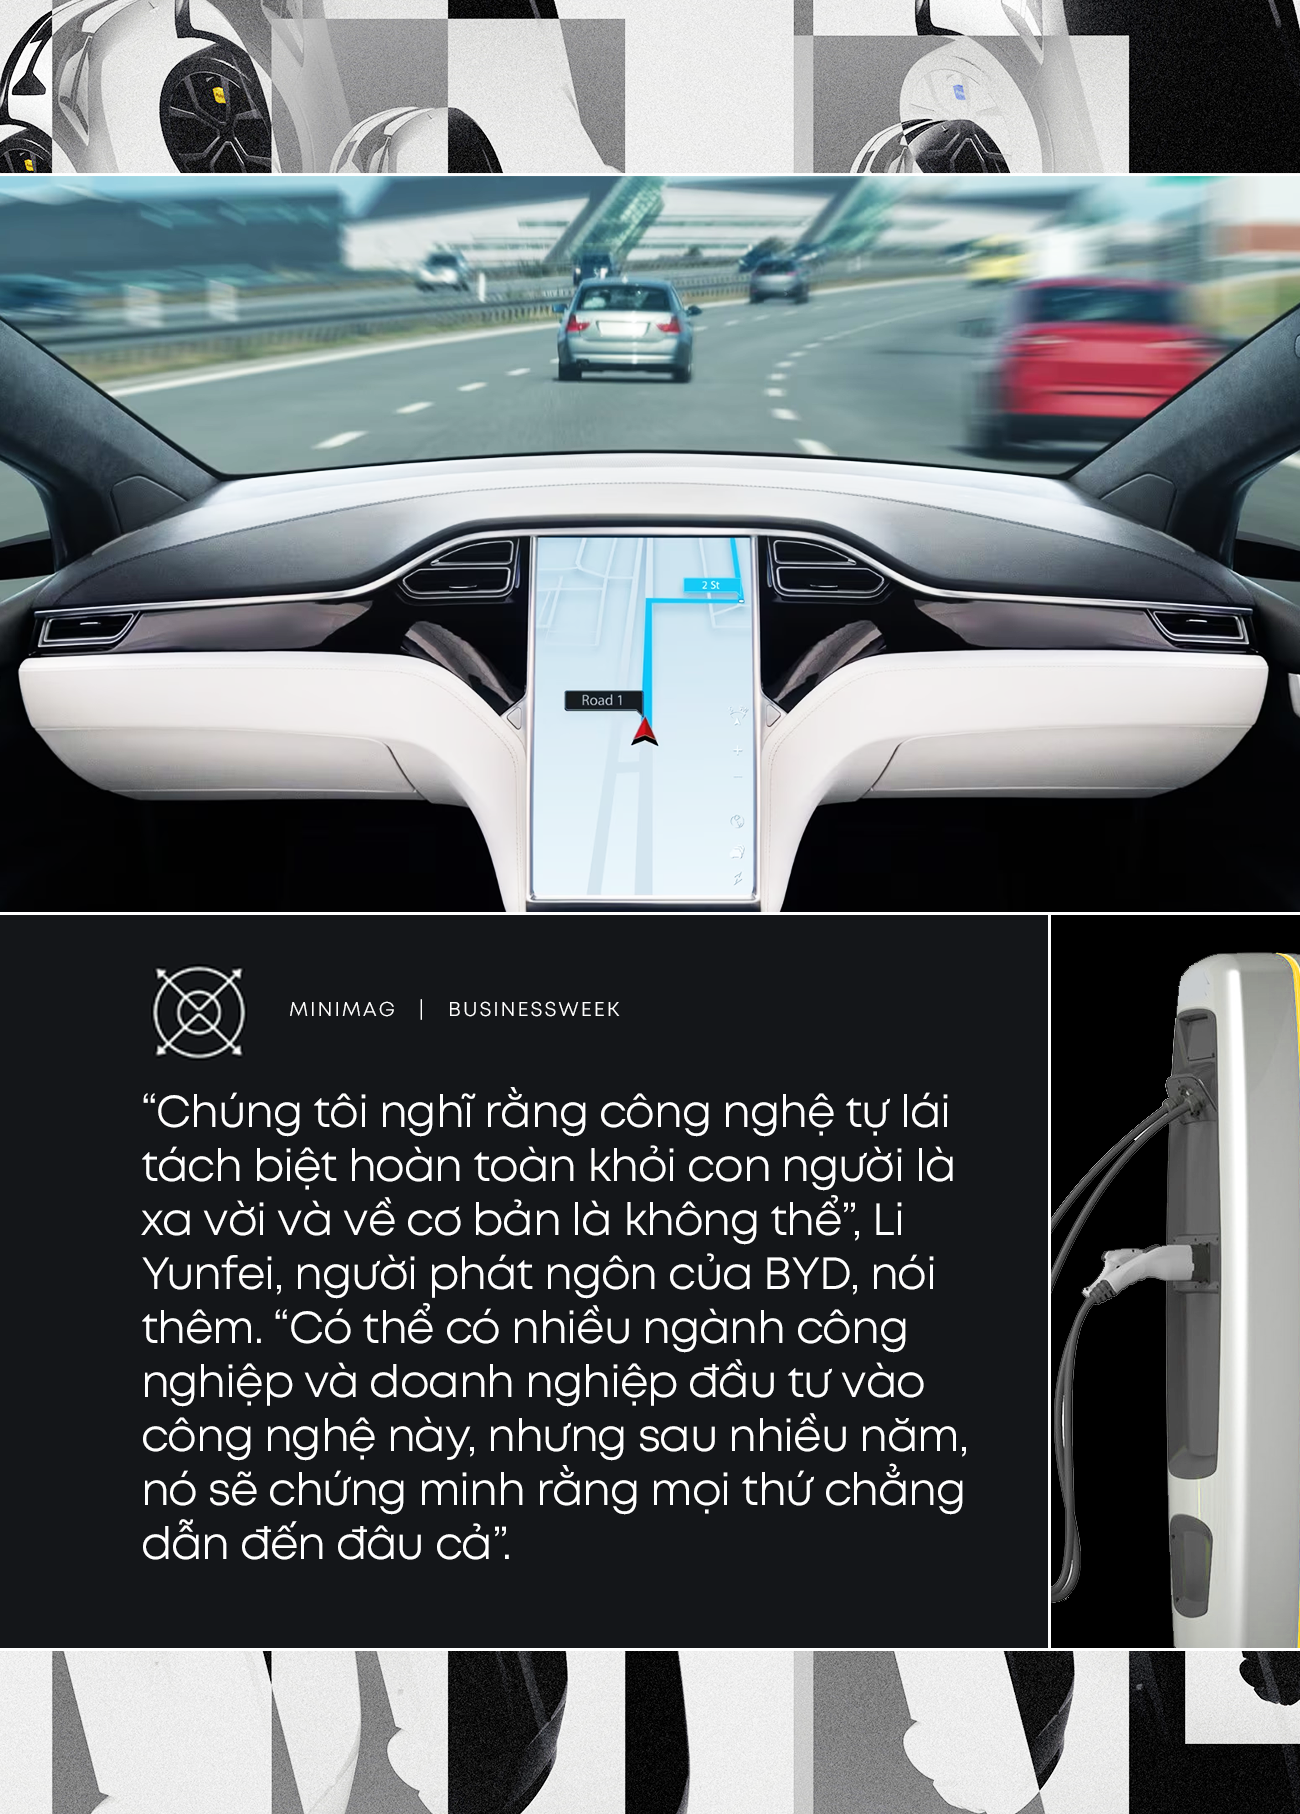 Khẩu chiến xoay quanh hình hài chiếc xe điện hoàn hảo: Tự lái, thông minh như điện thoại di động hay an toàn, pin khoẻ, giá cả phải chăng? - Ảnh 1.